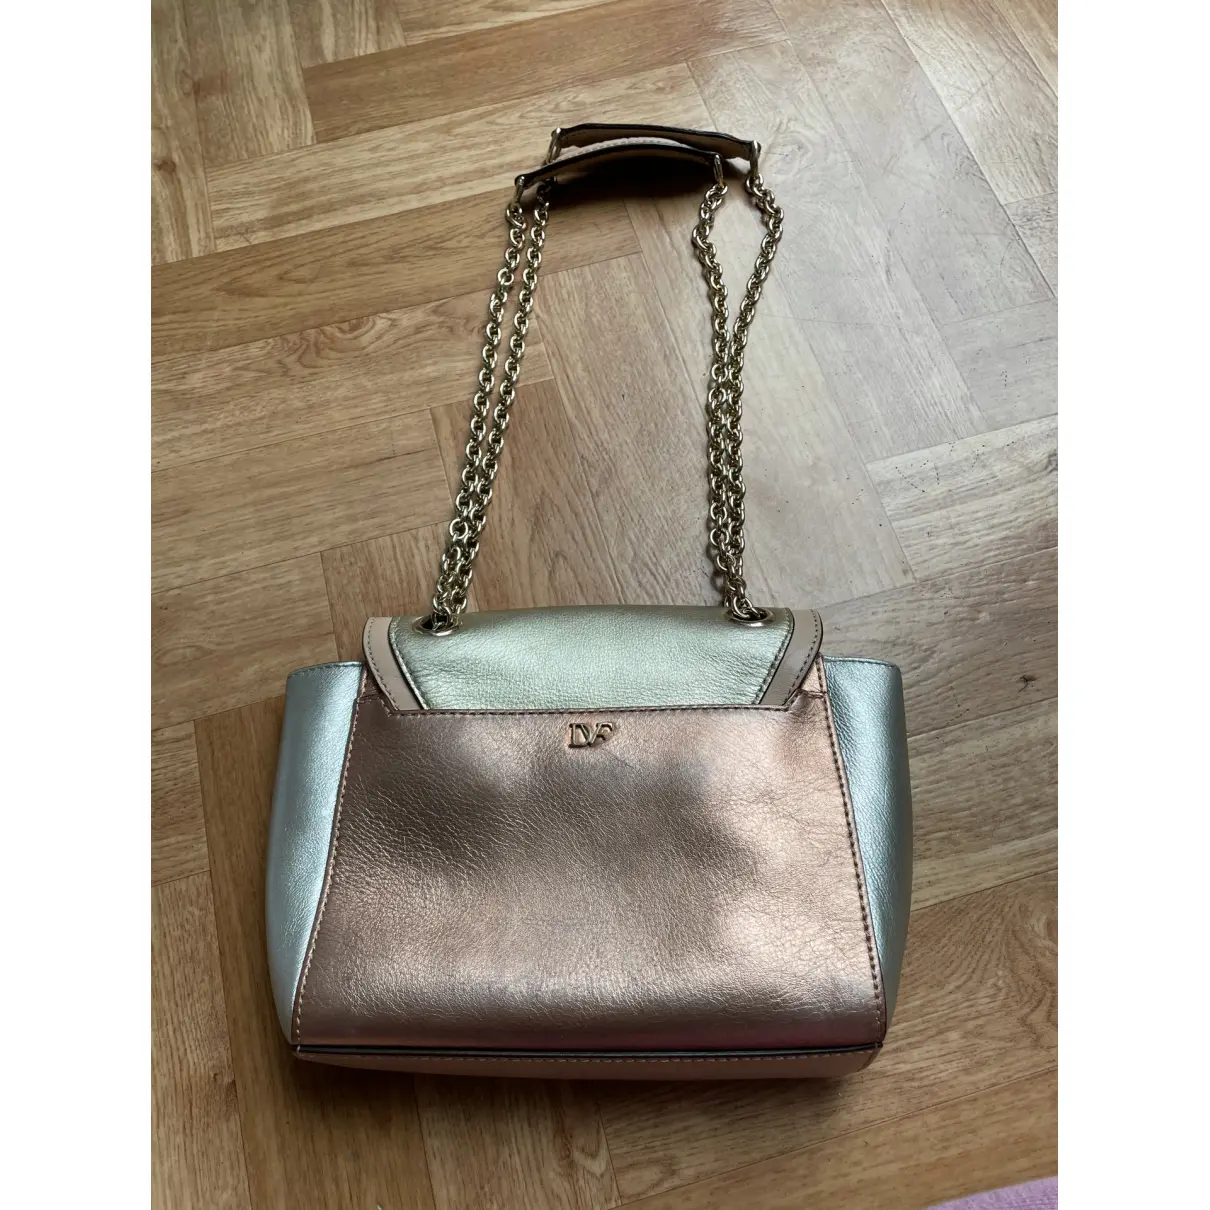 Buy Diane Von Furstenberg Leather handbag online